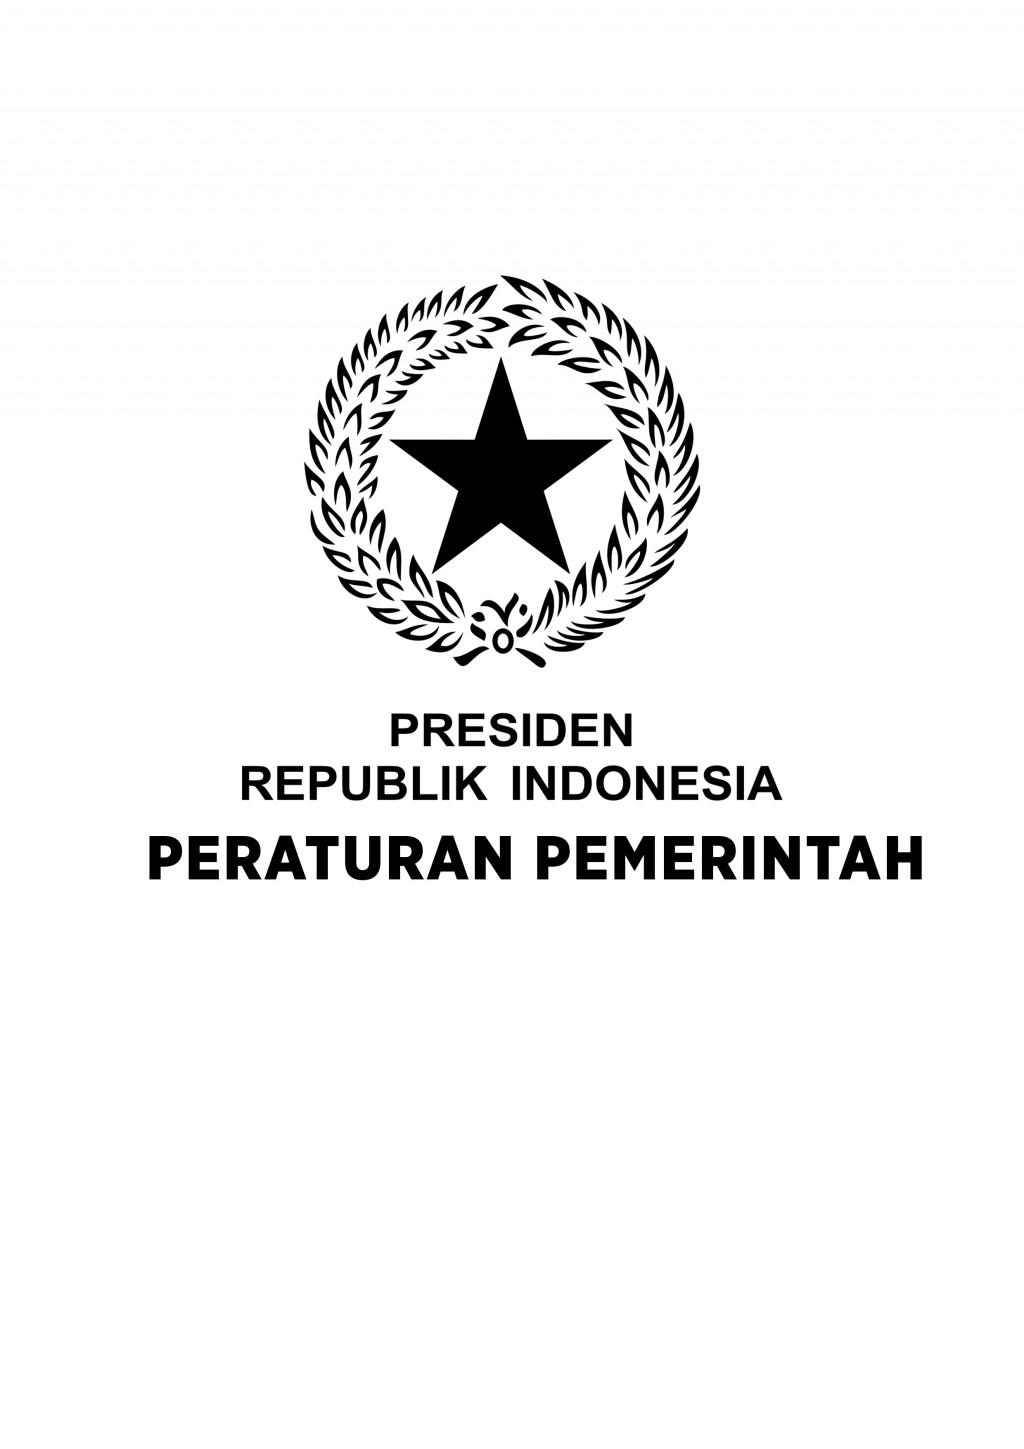 Download Logo Peraturan Pemerintah Pusat - KibrisPDR